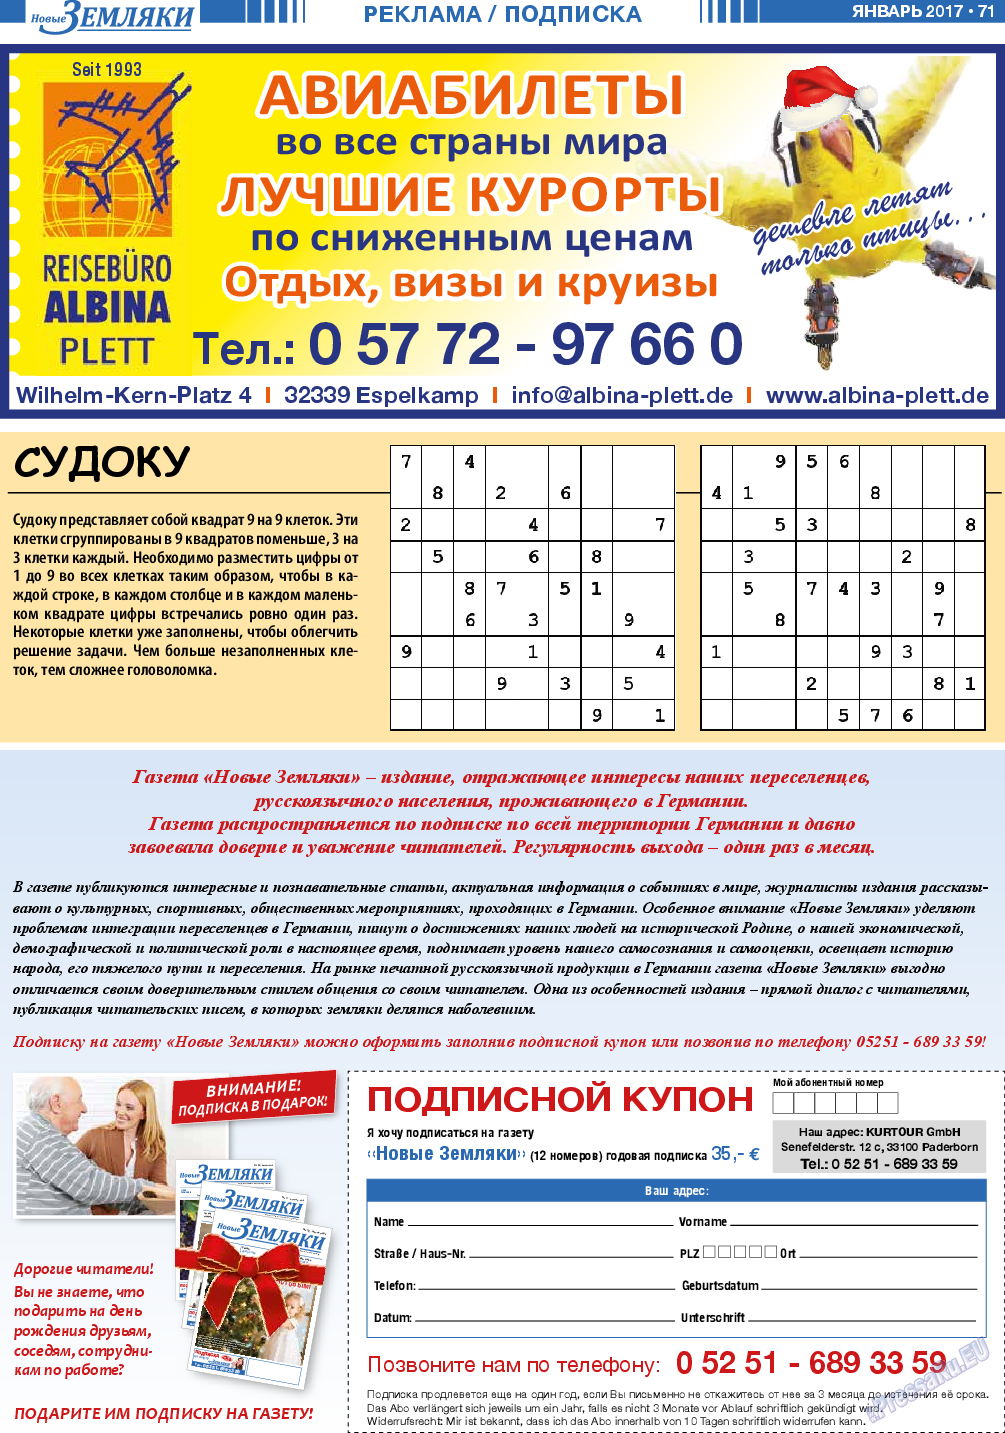 Новые Земляки, газета. 2017 №1 стр.71